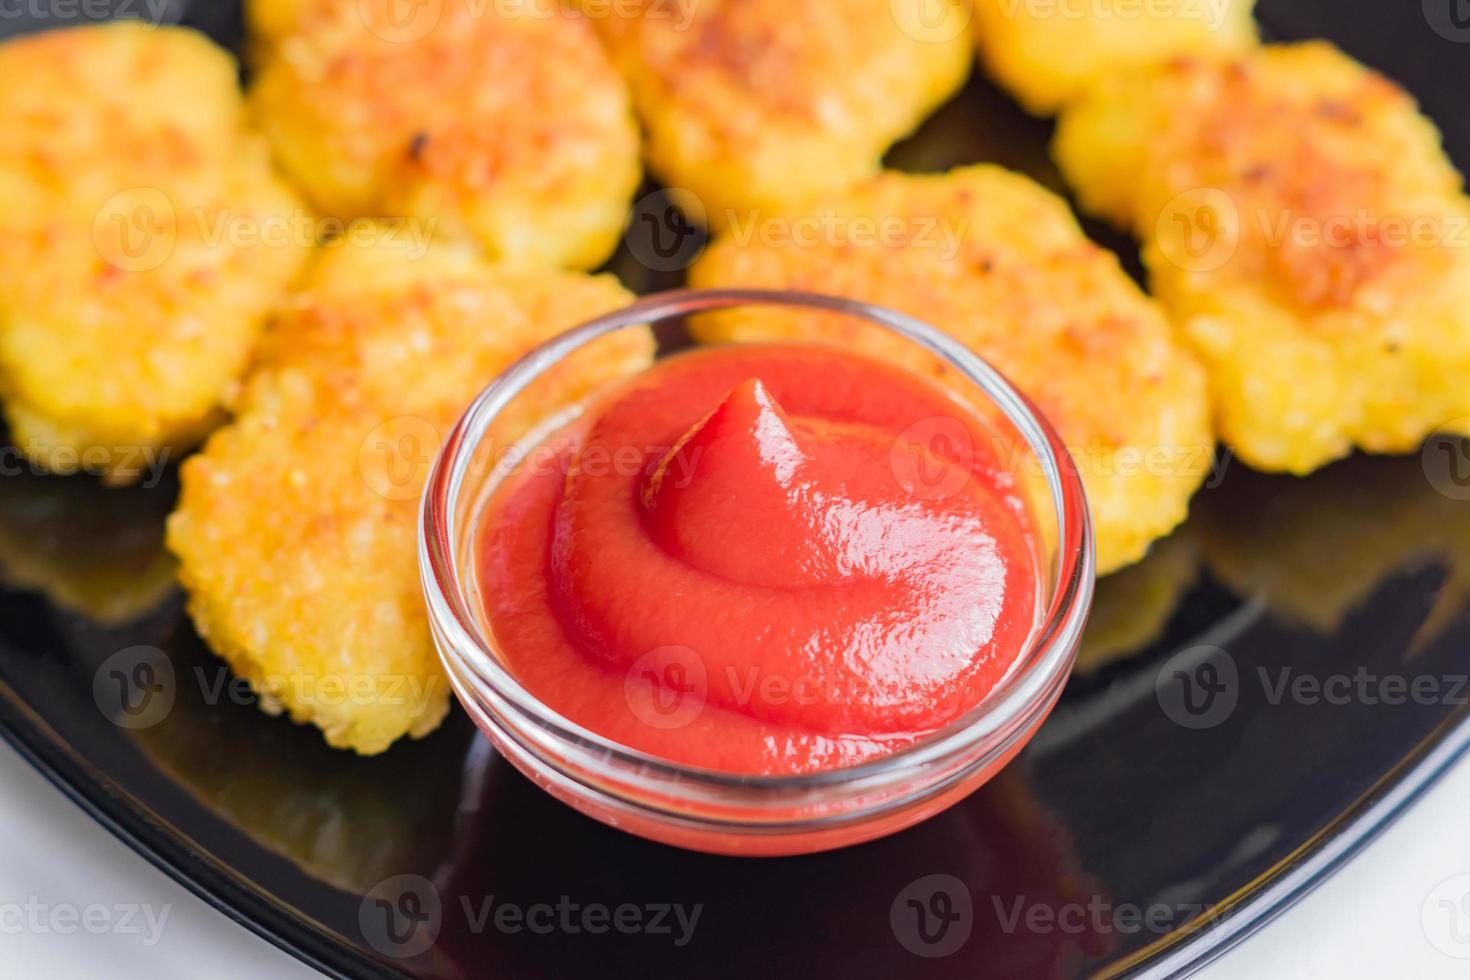 nuggets de frango crocante frito com ketchup na chapa preta. alimentos não saudáveis. foto